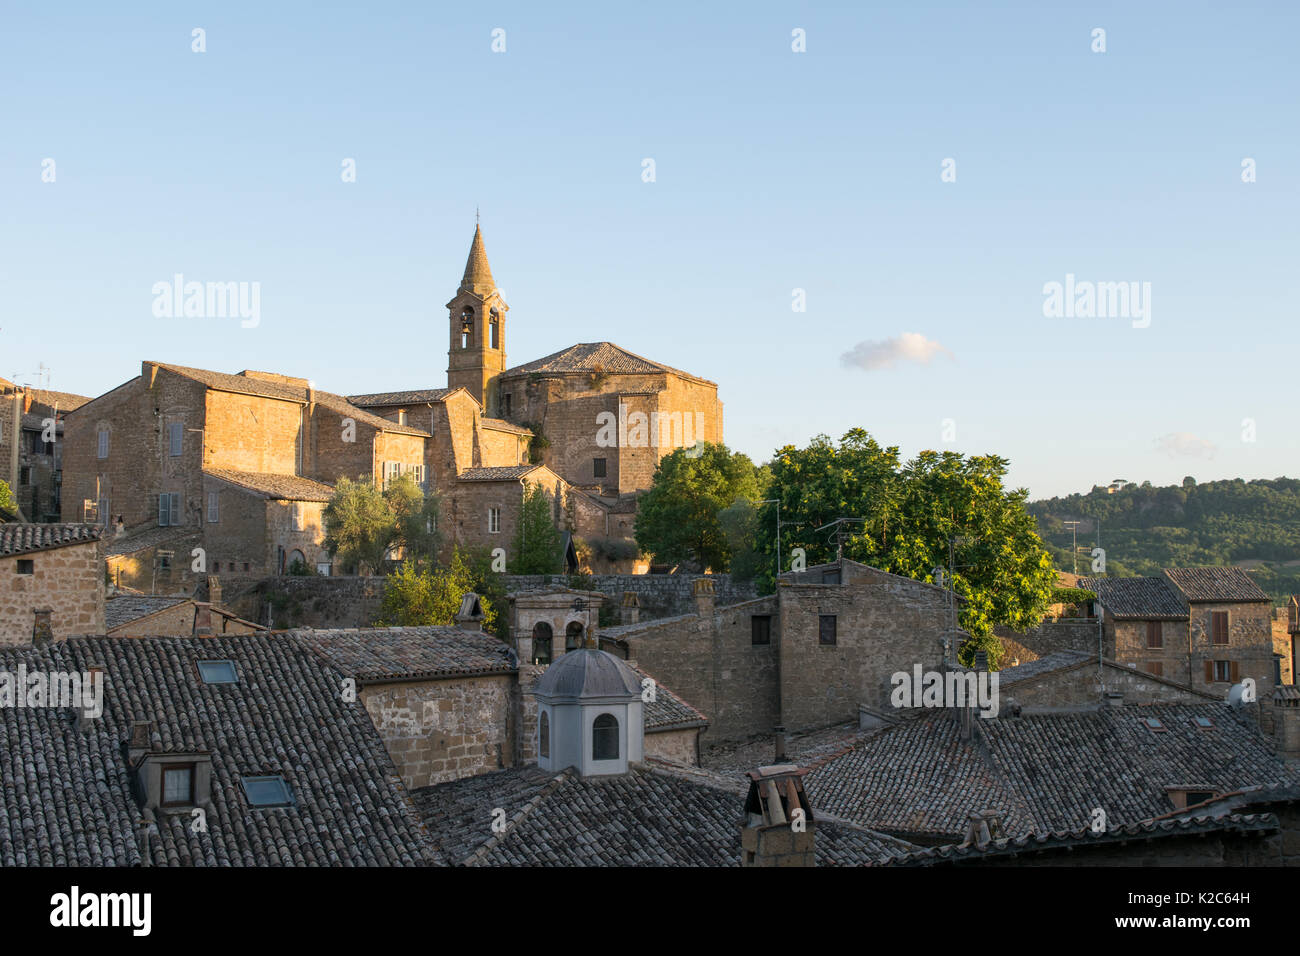 Les bâtiments de la chambre et une place de l'église et clocher à la vieille ville d'Orvieto, Italie centrale, région d'Ombrie. Vieille ville conserve un caractère médiéval Banque D'Images